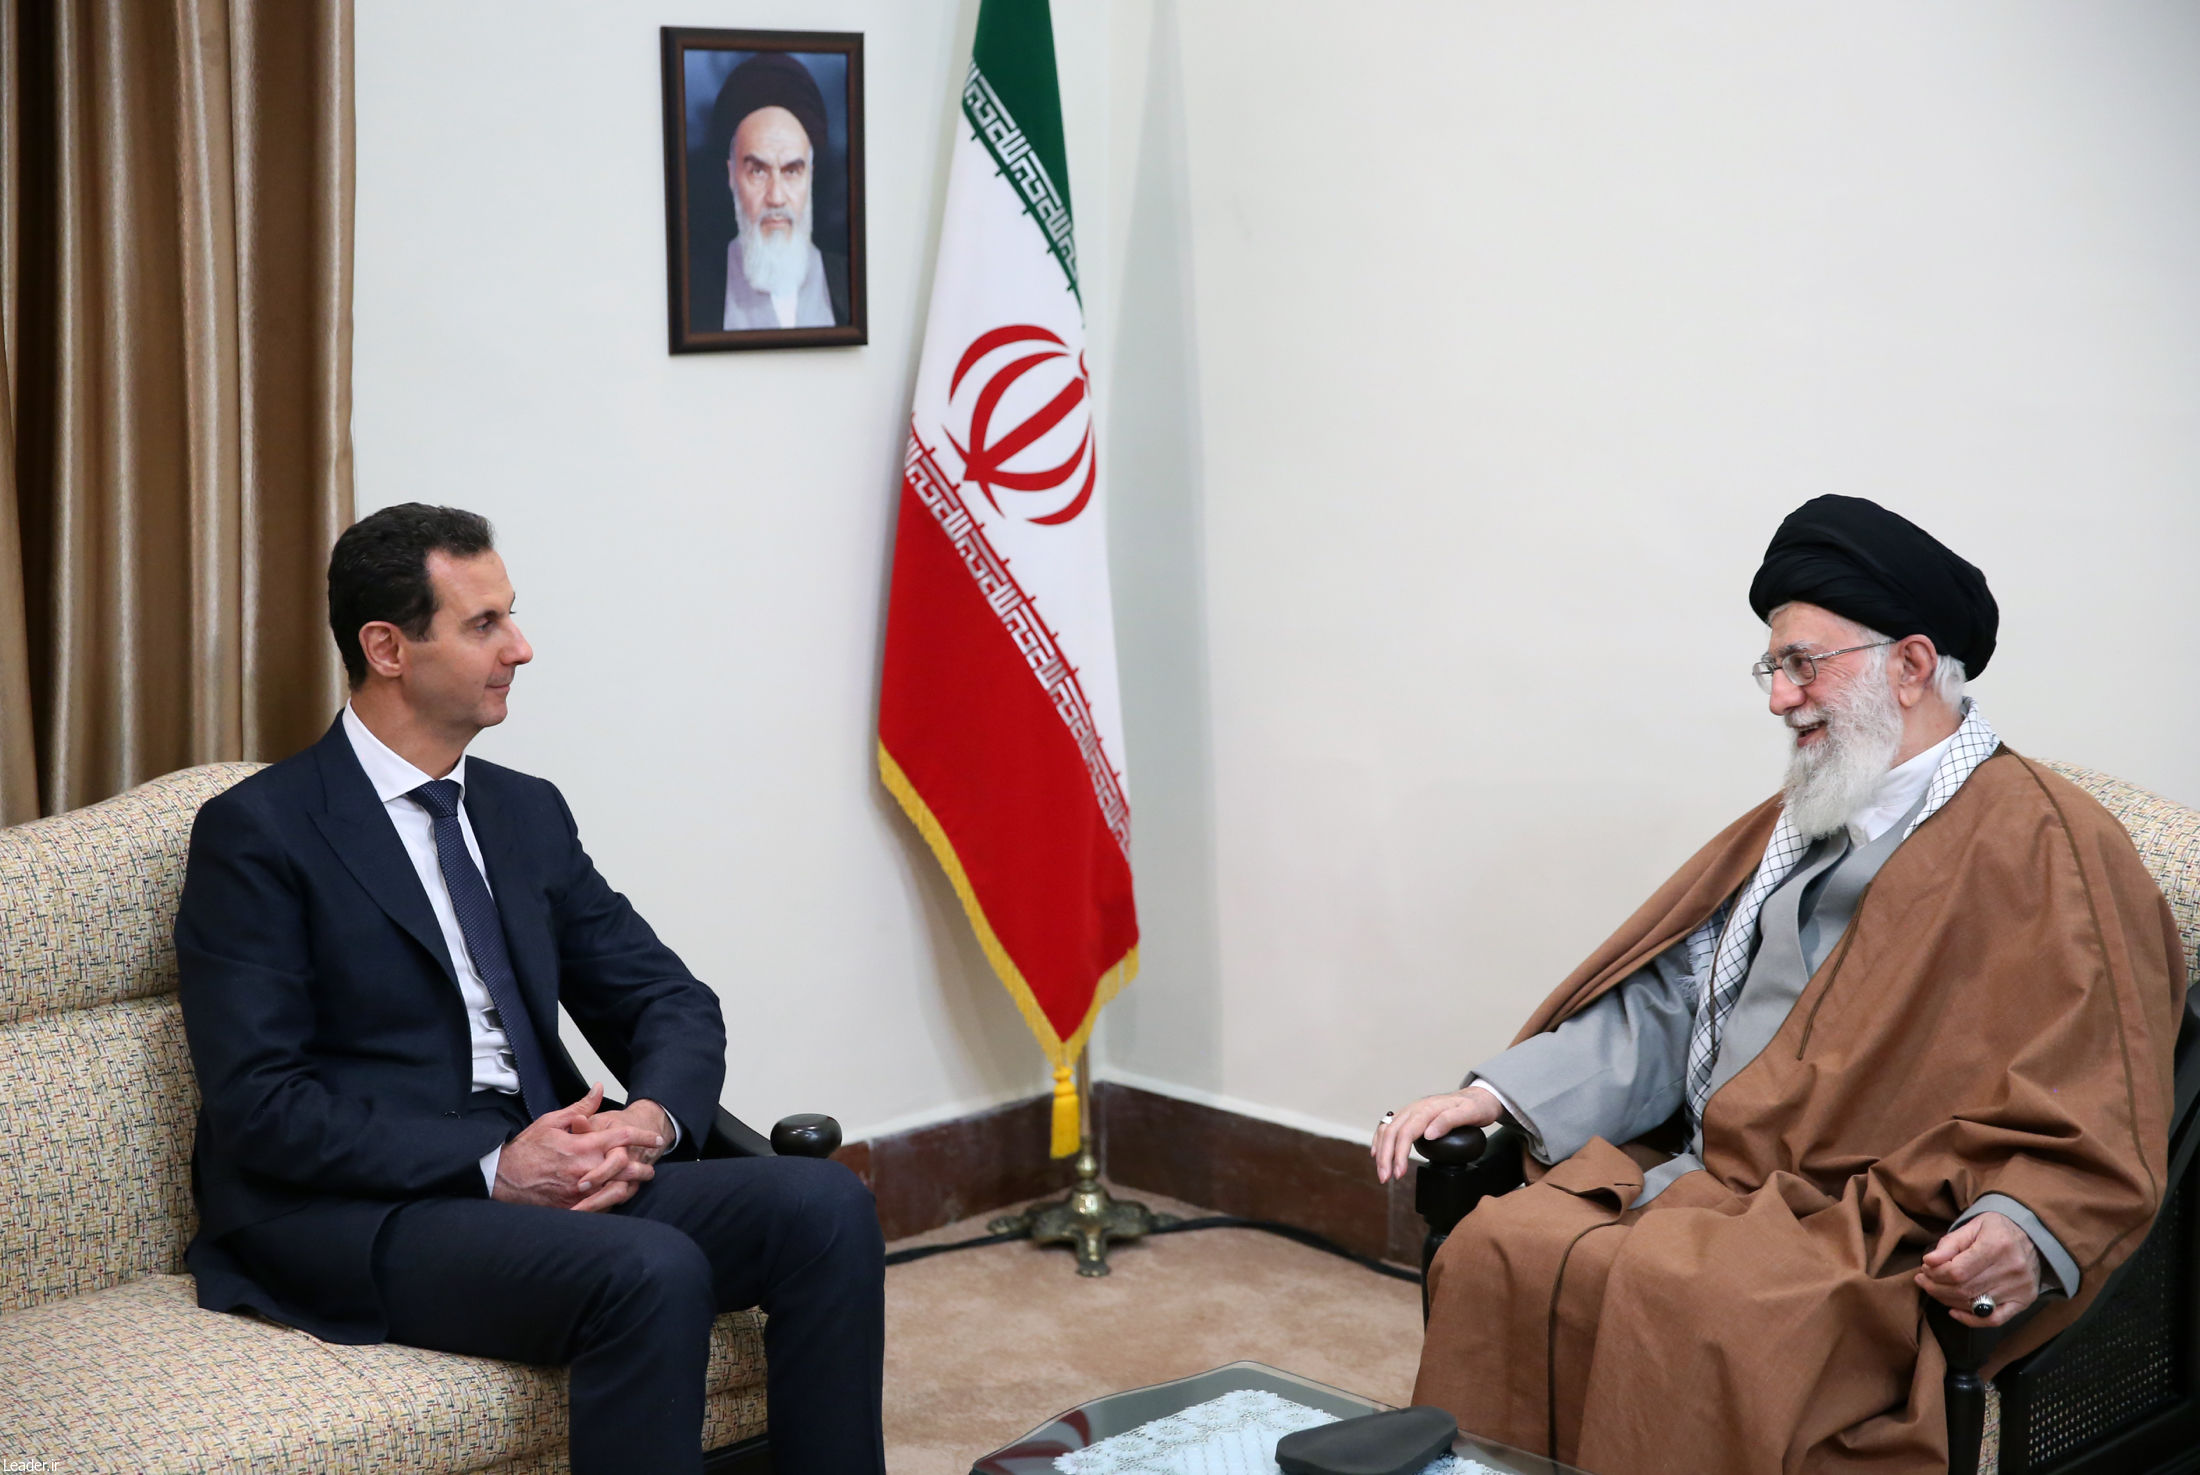 ابعاد سیاسی - نظامی مذاکرات رئیس جمهور سوریه در ایران چه بود؟